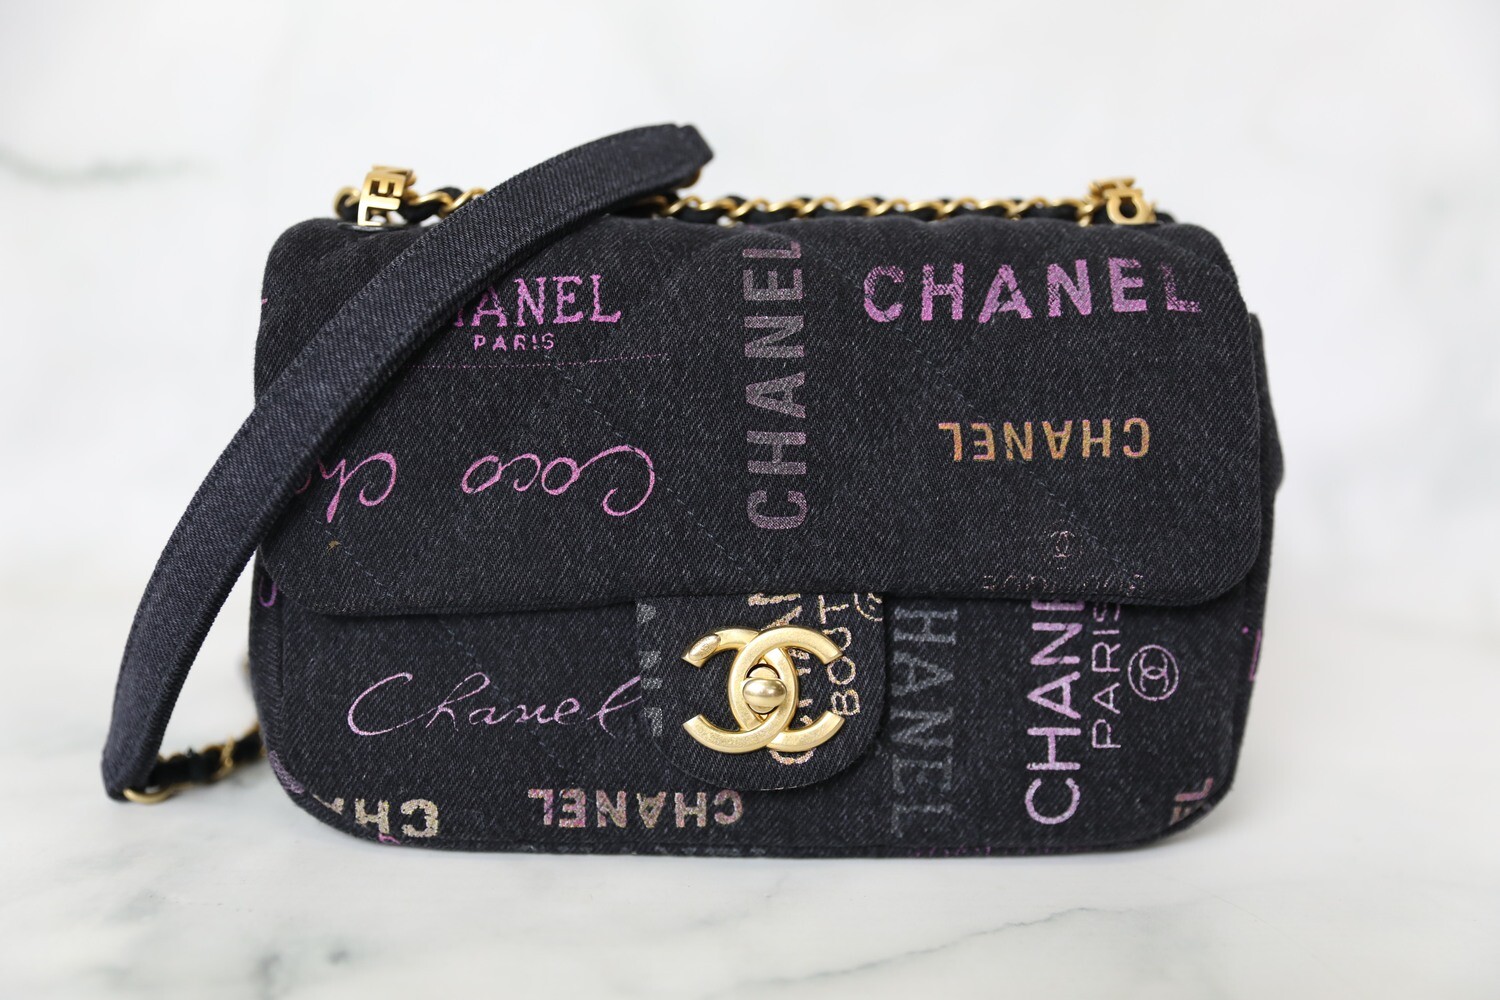 Chanel 22 Denim Small, New In Box WA001 - Julia Rose Boston